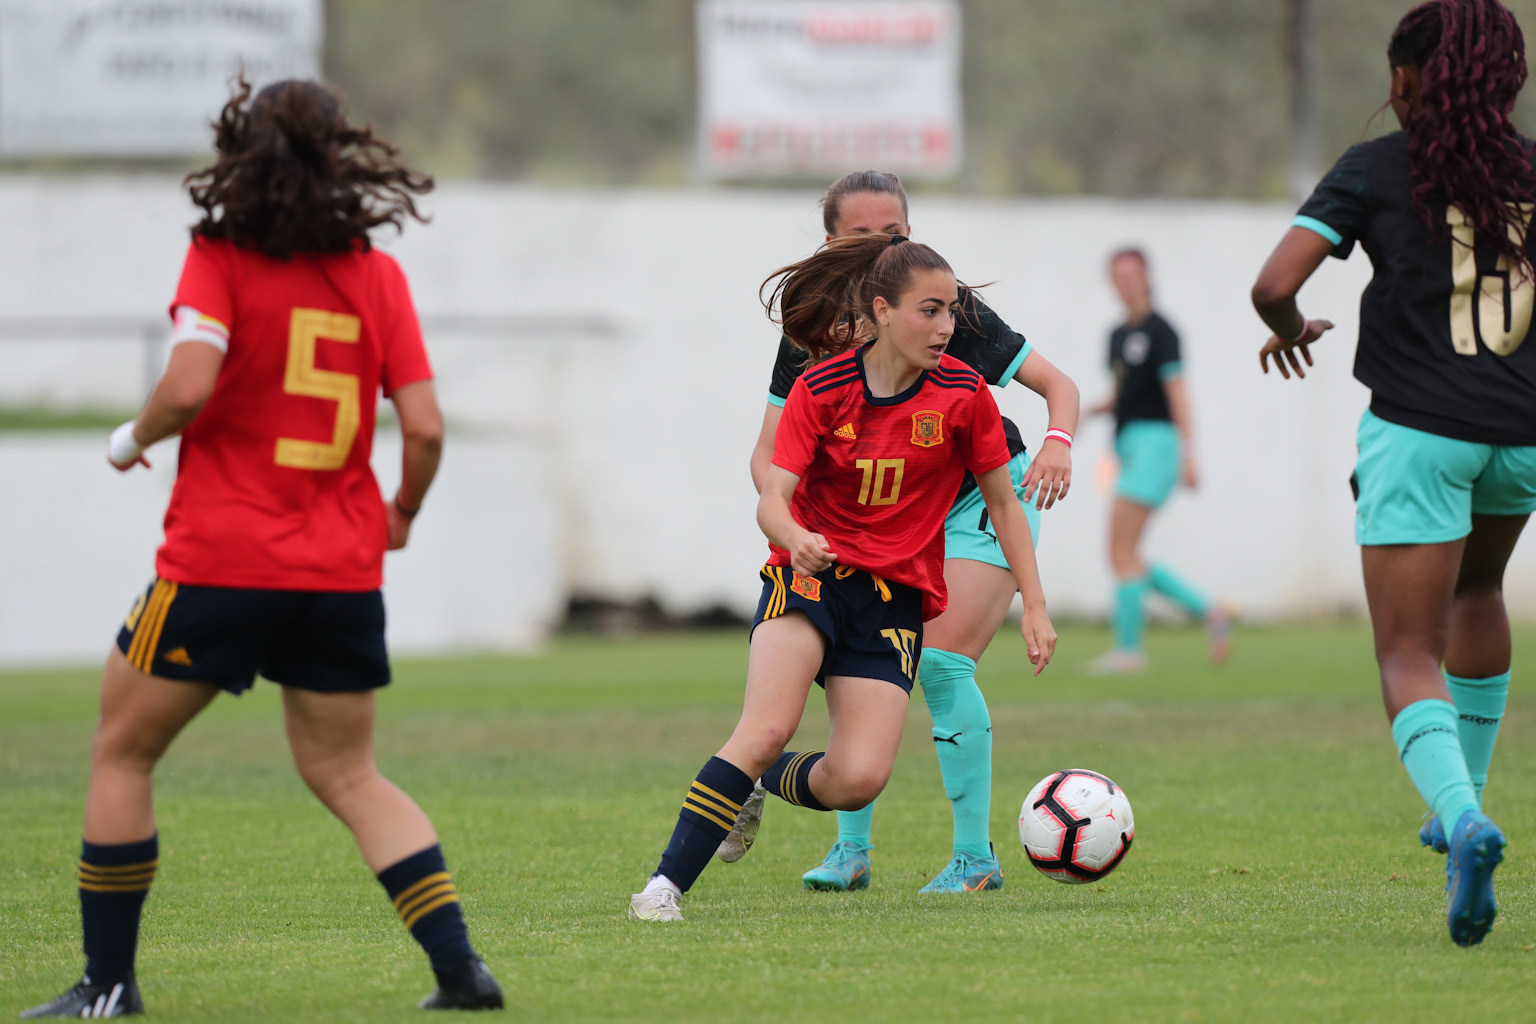 La futbolista burjassotense, Ainhoa Alguacil Amores, Campeona del Mundo sub-17 con la Española de fútbol Ajuntament de Burjassot